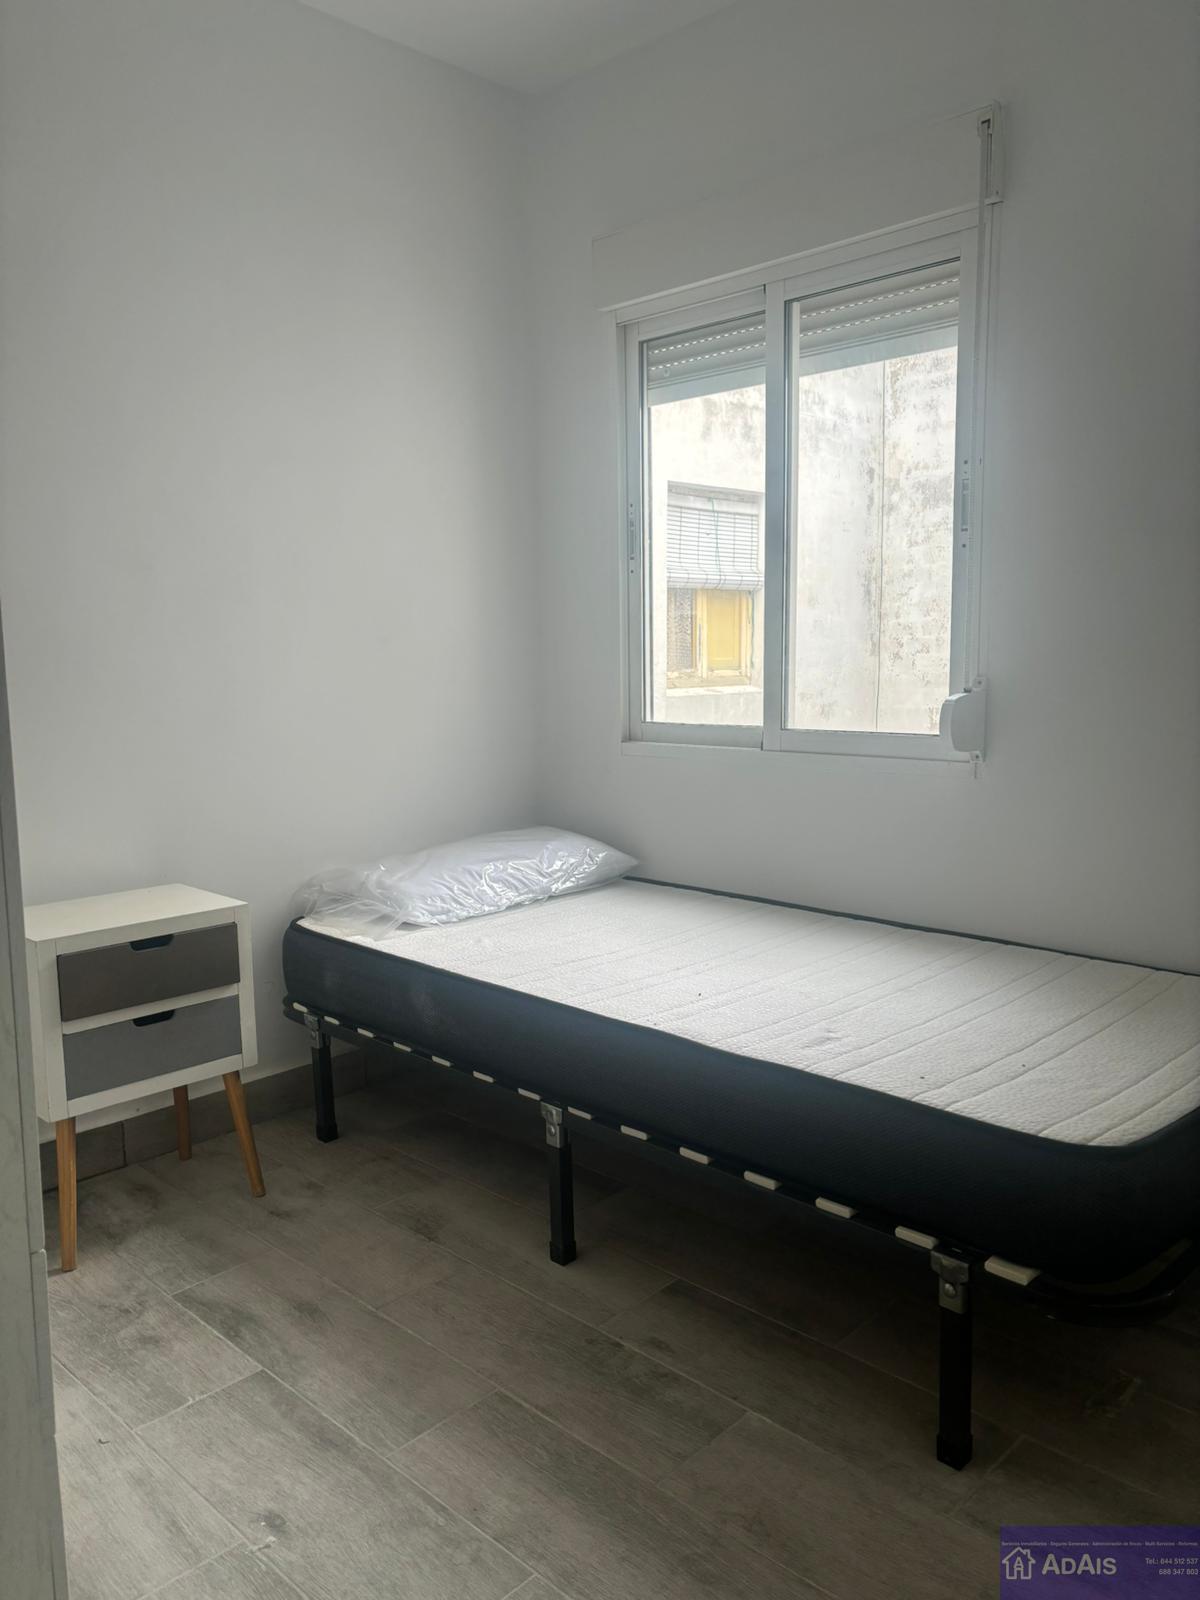 For rent of room in Alqueria de la Comtessa l